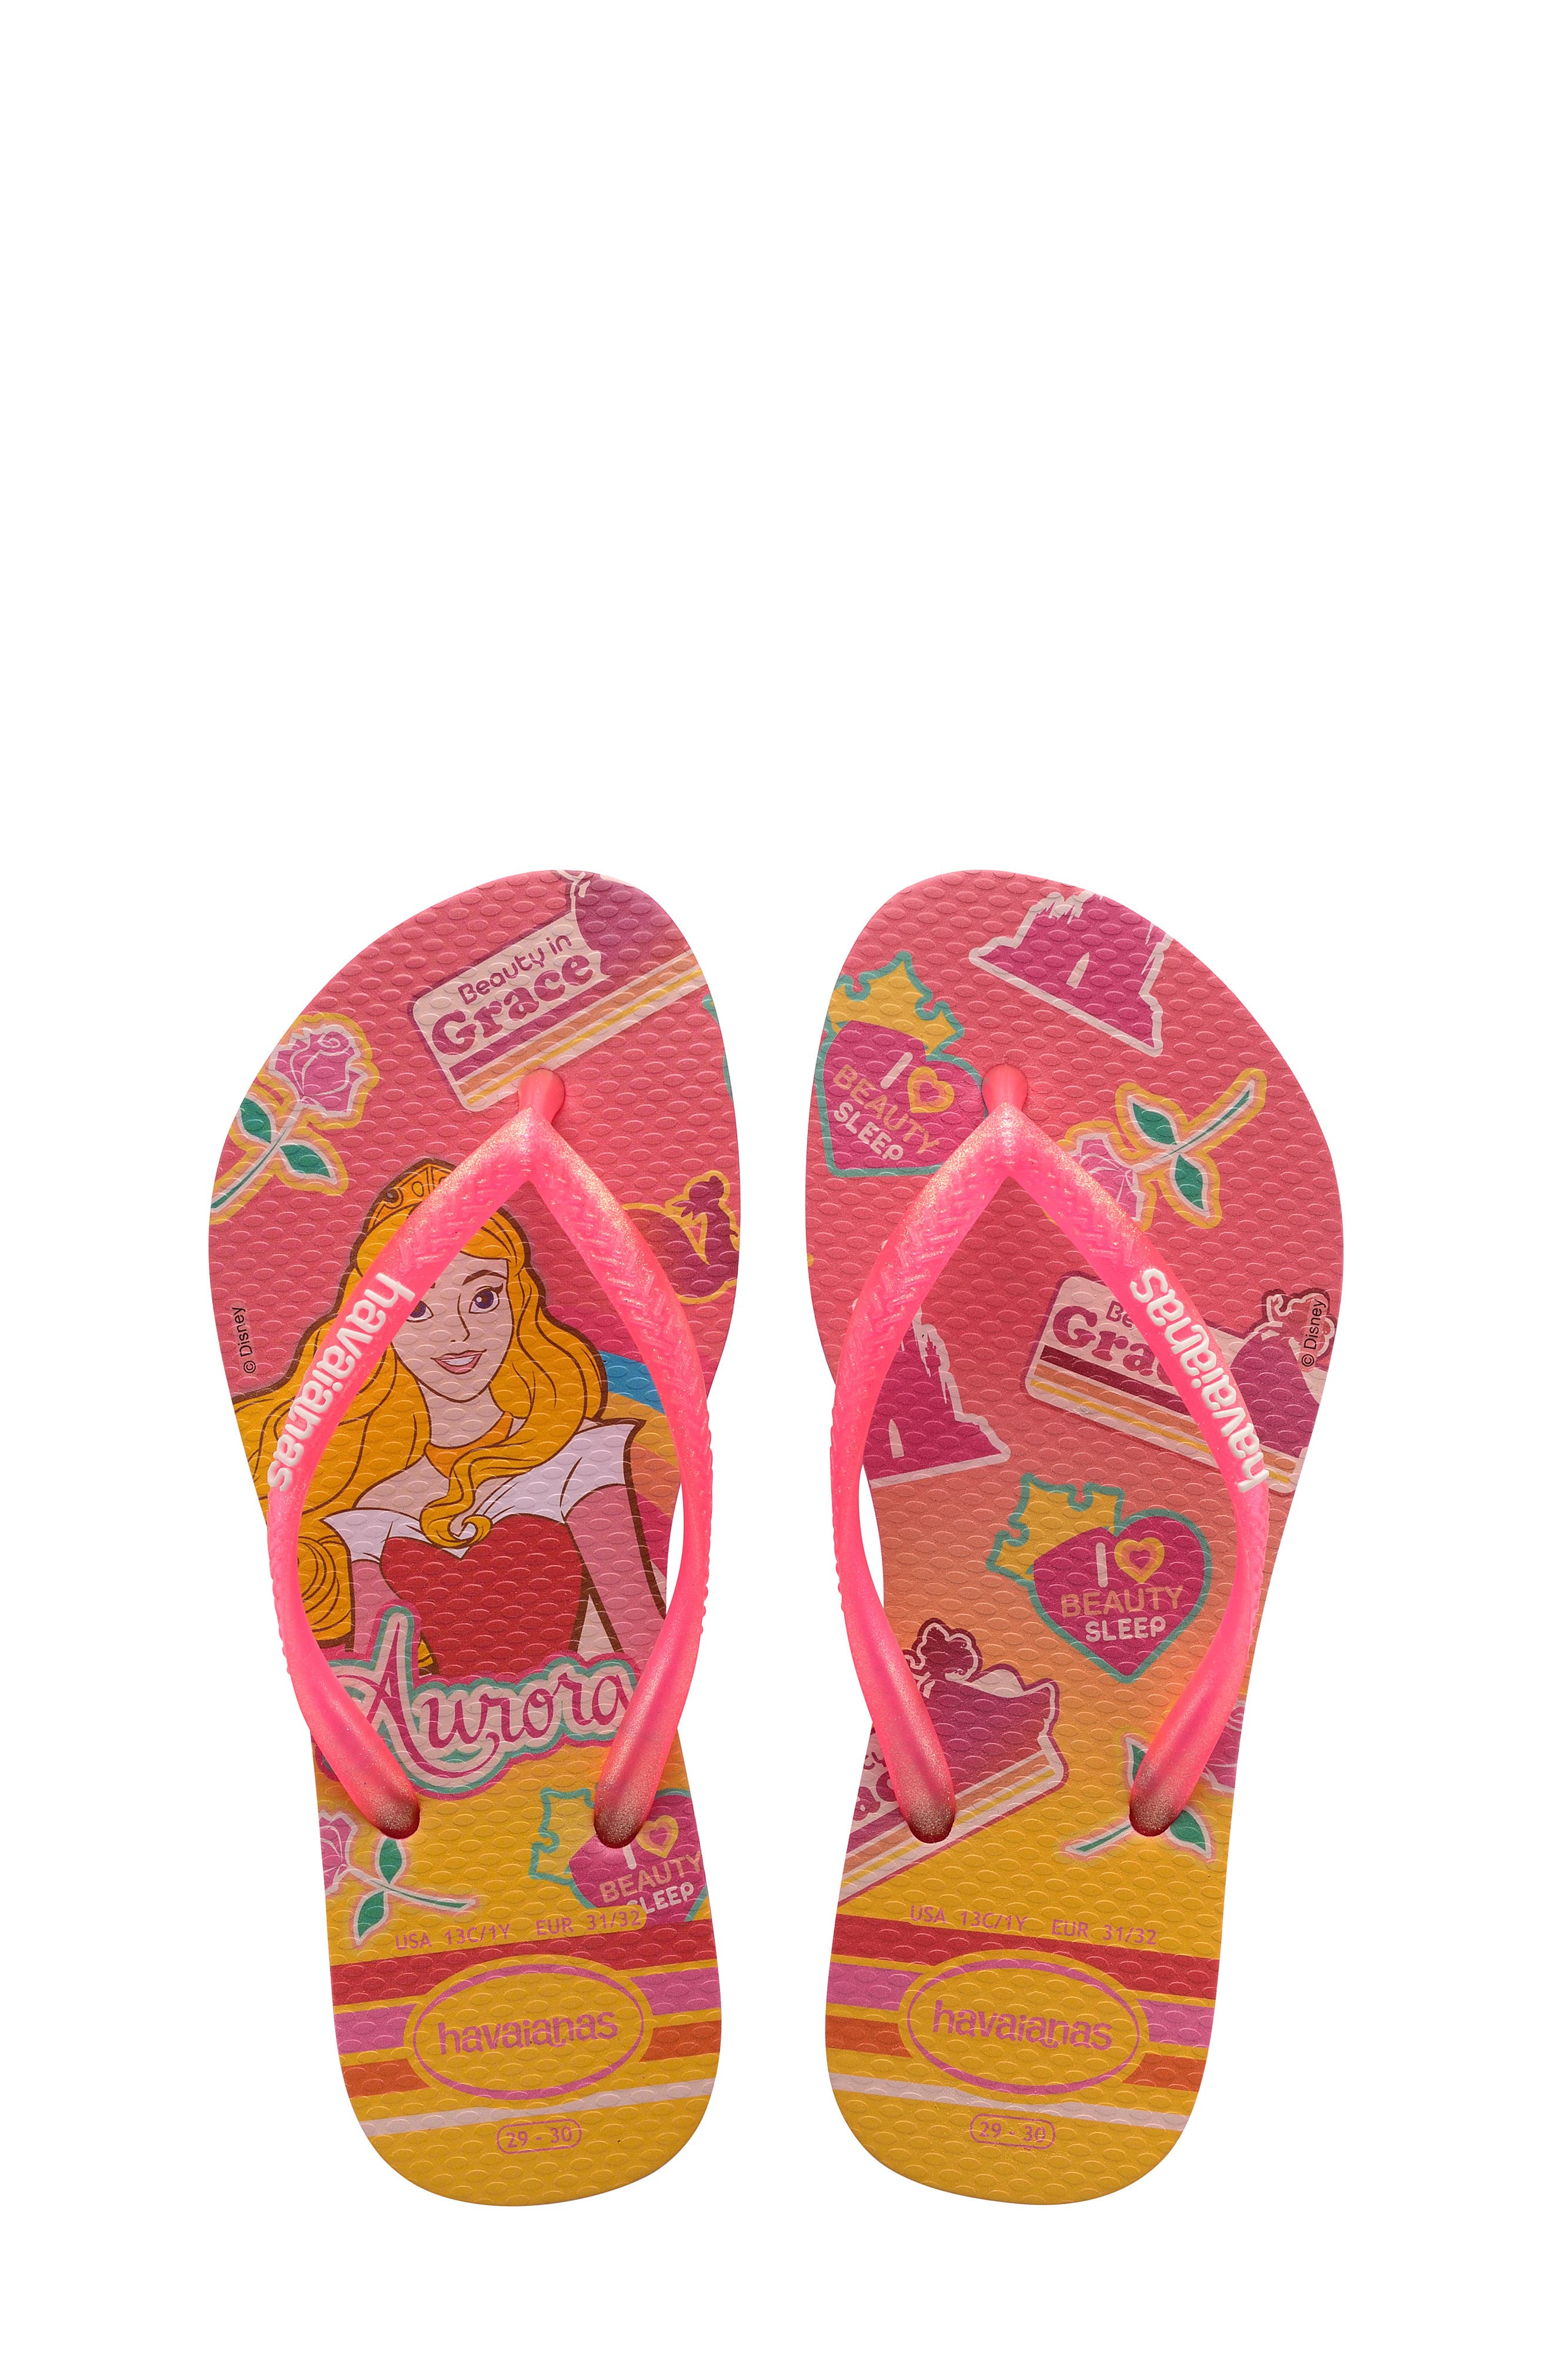 havaianas grace sandals